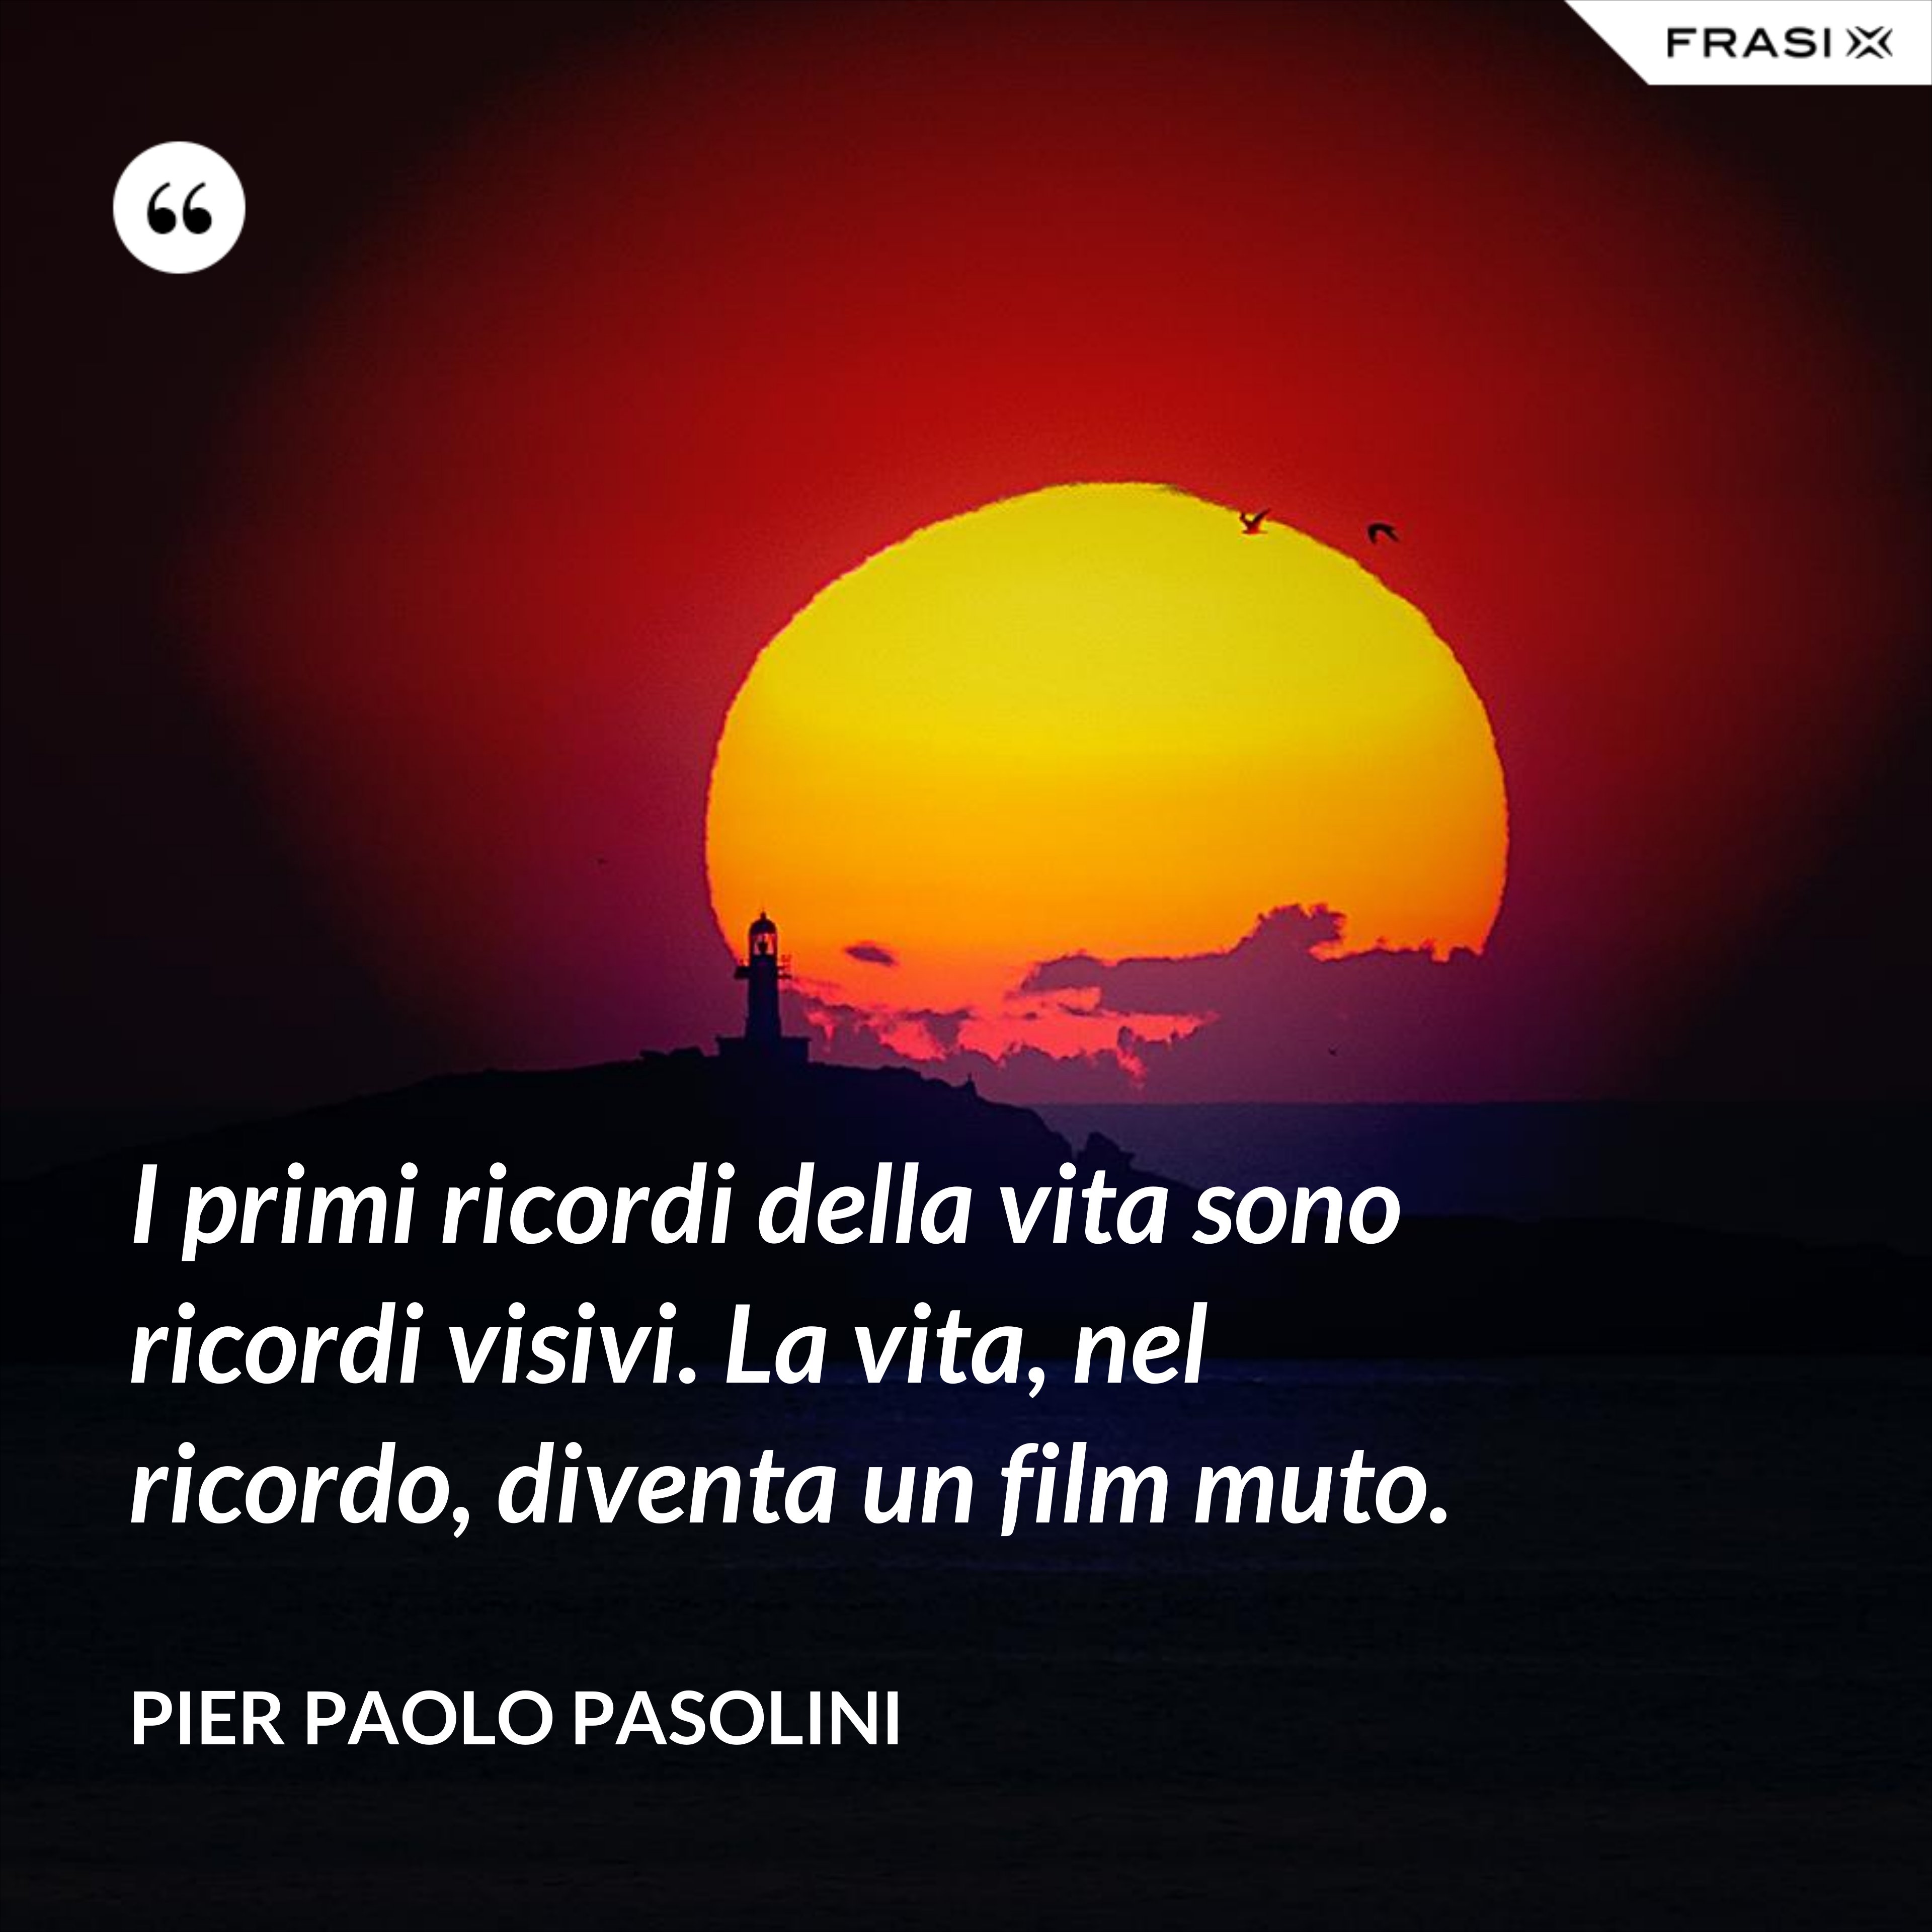 I primi ricordi della vita sono ricordi visivi. La vita, nel ricordo, diventa un film muto. - Pier Paolo Pasolini